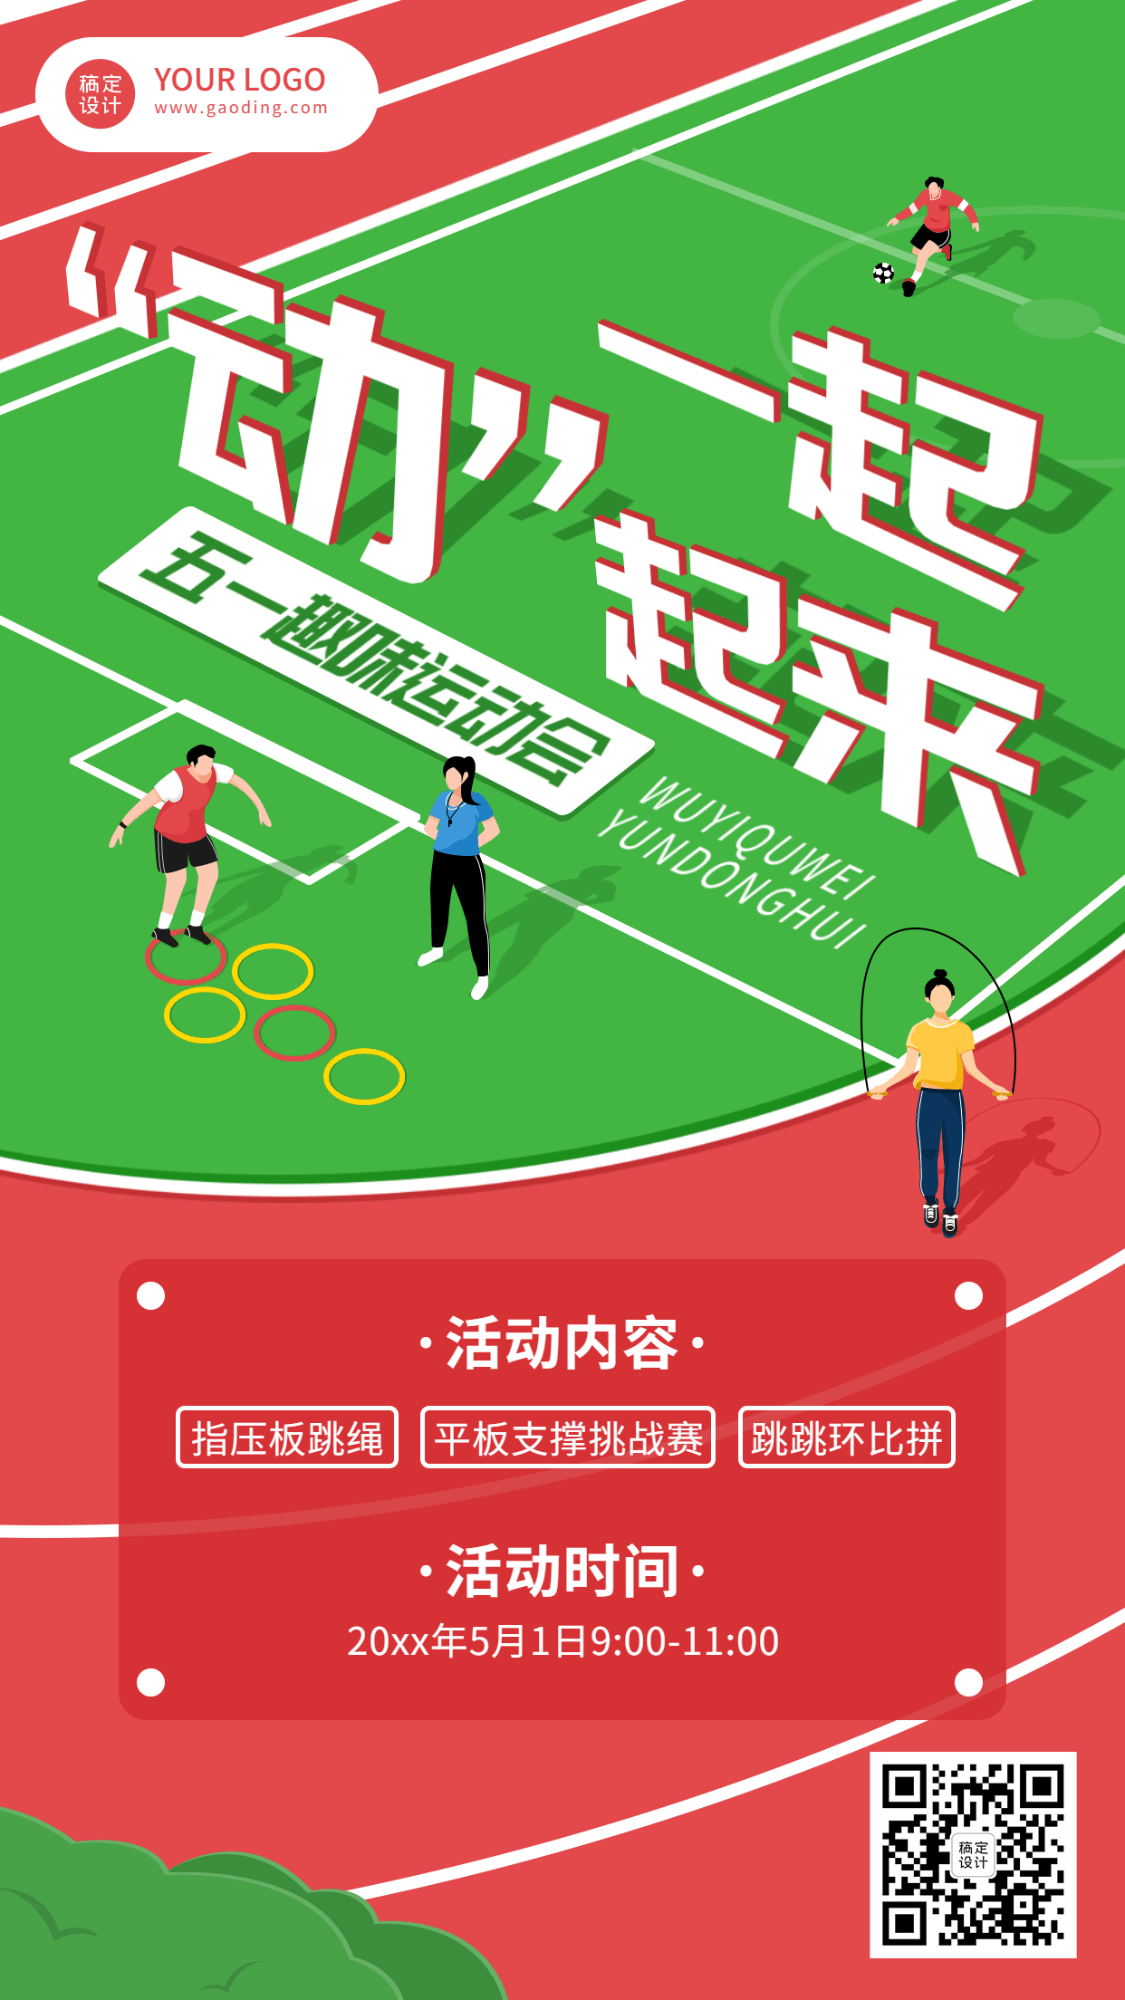 劳动节节日活动插画手机海报